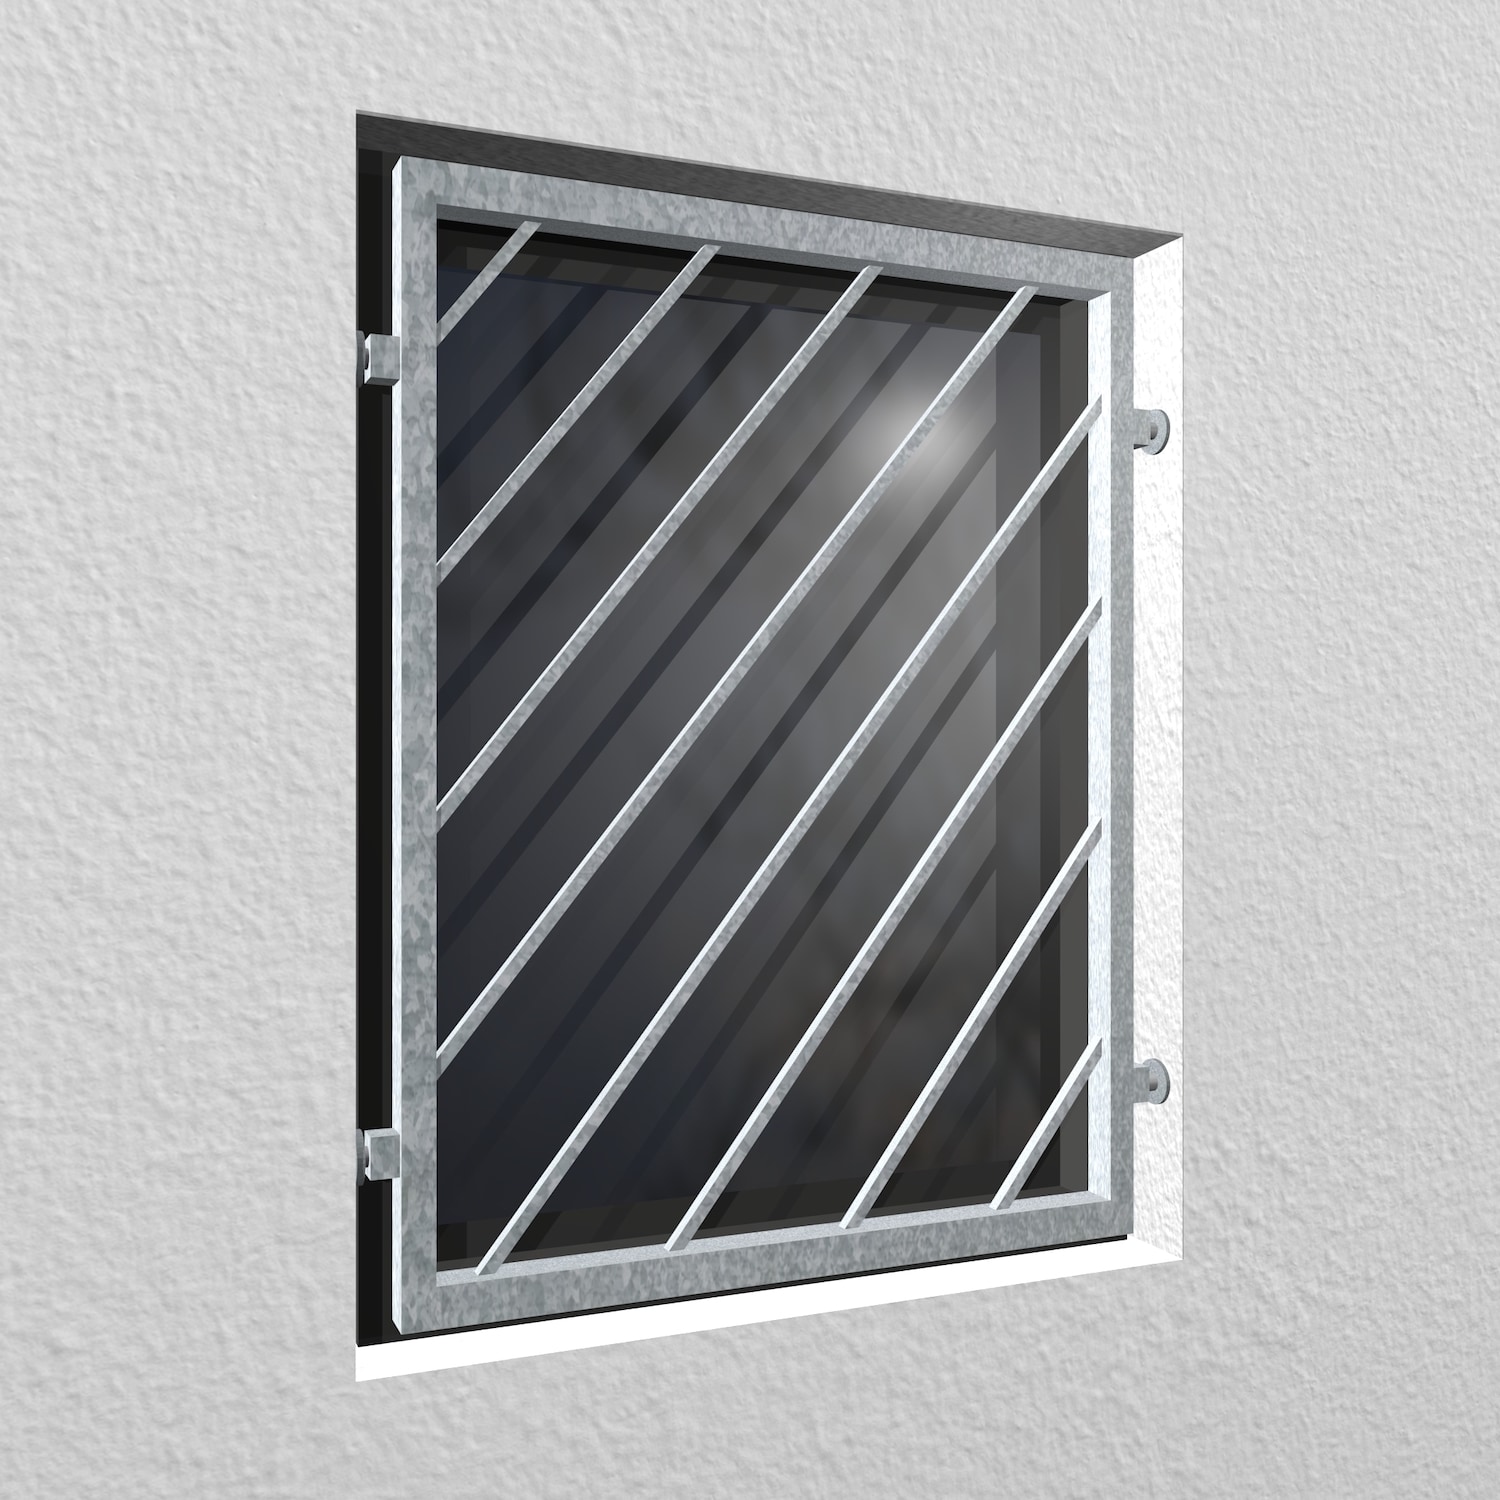 Grille de défense pour fenêtres en acier galvanisé mobile à barre diagonale